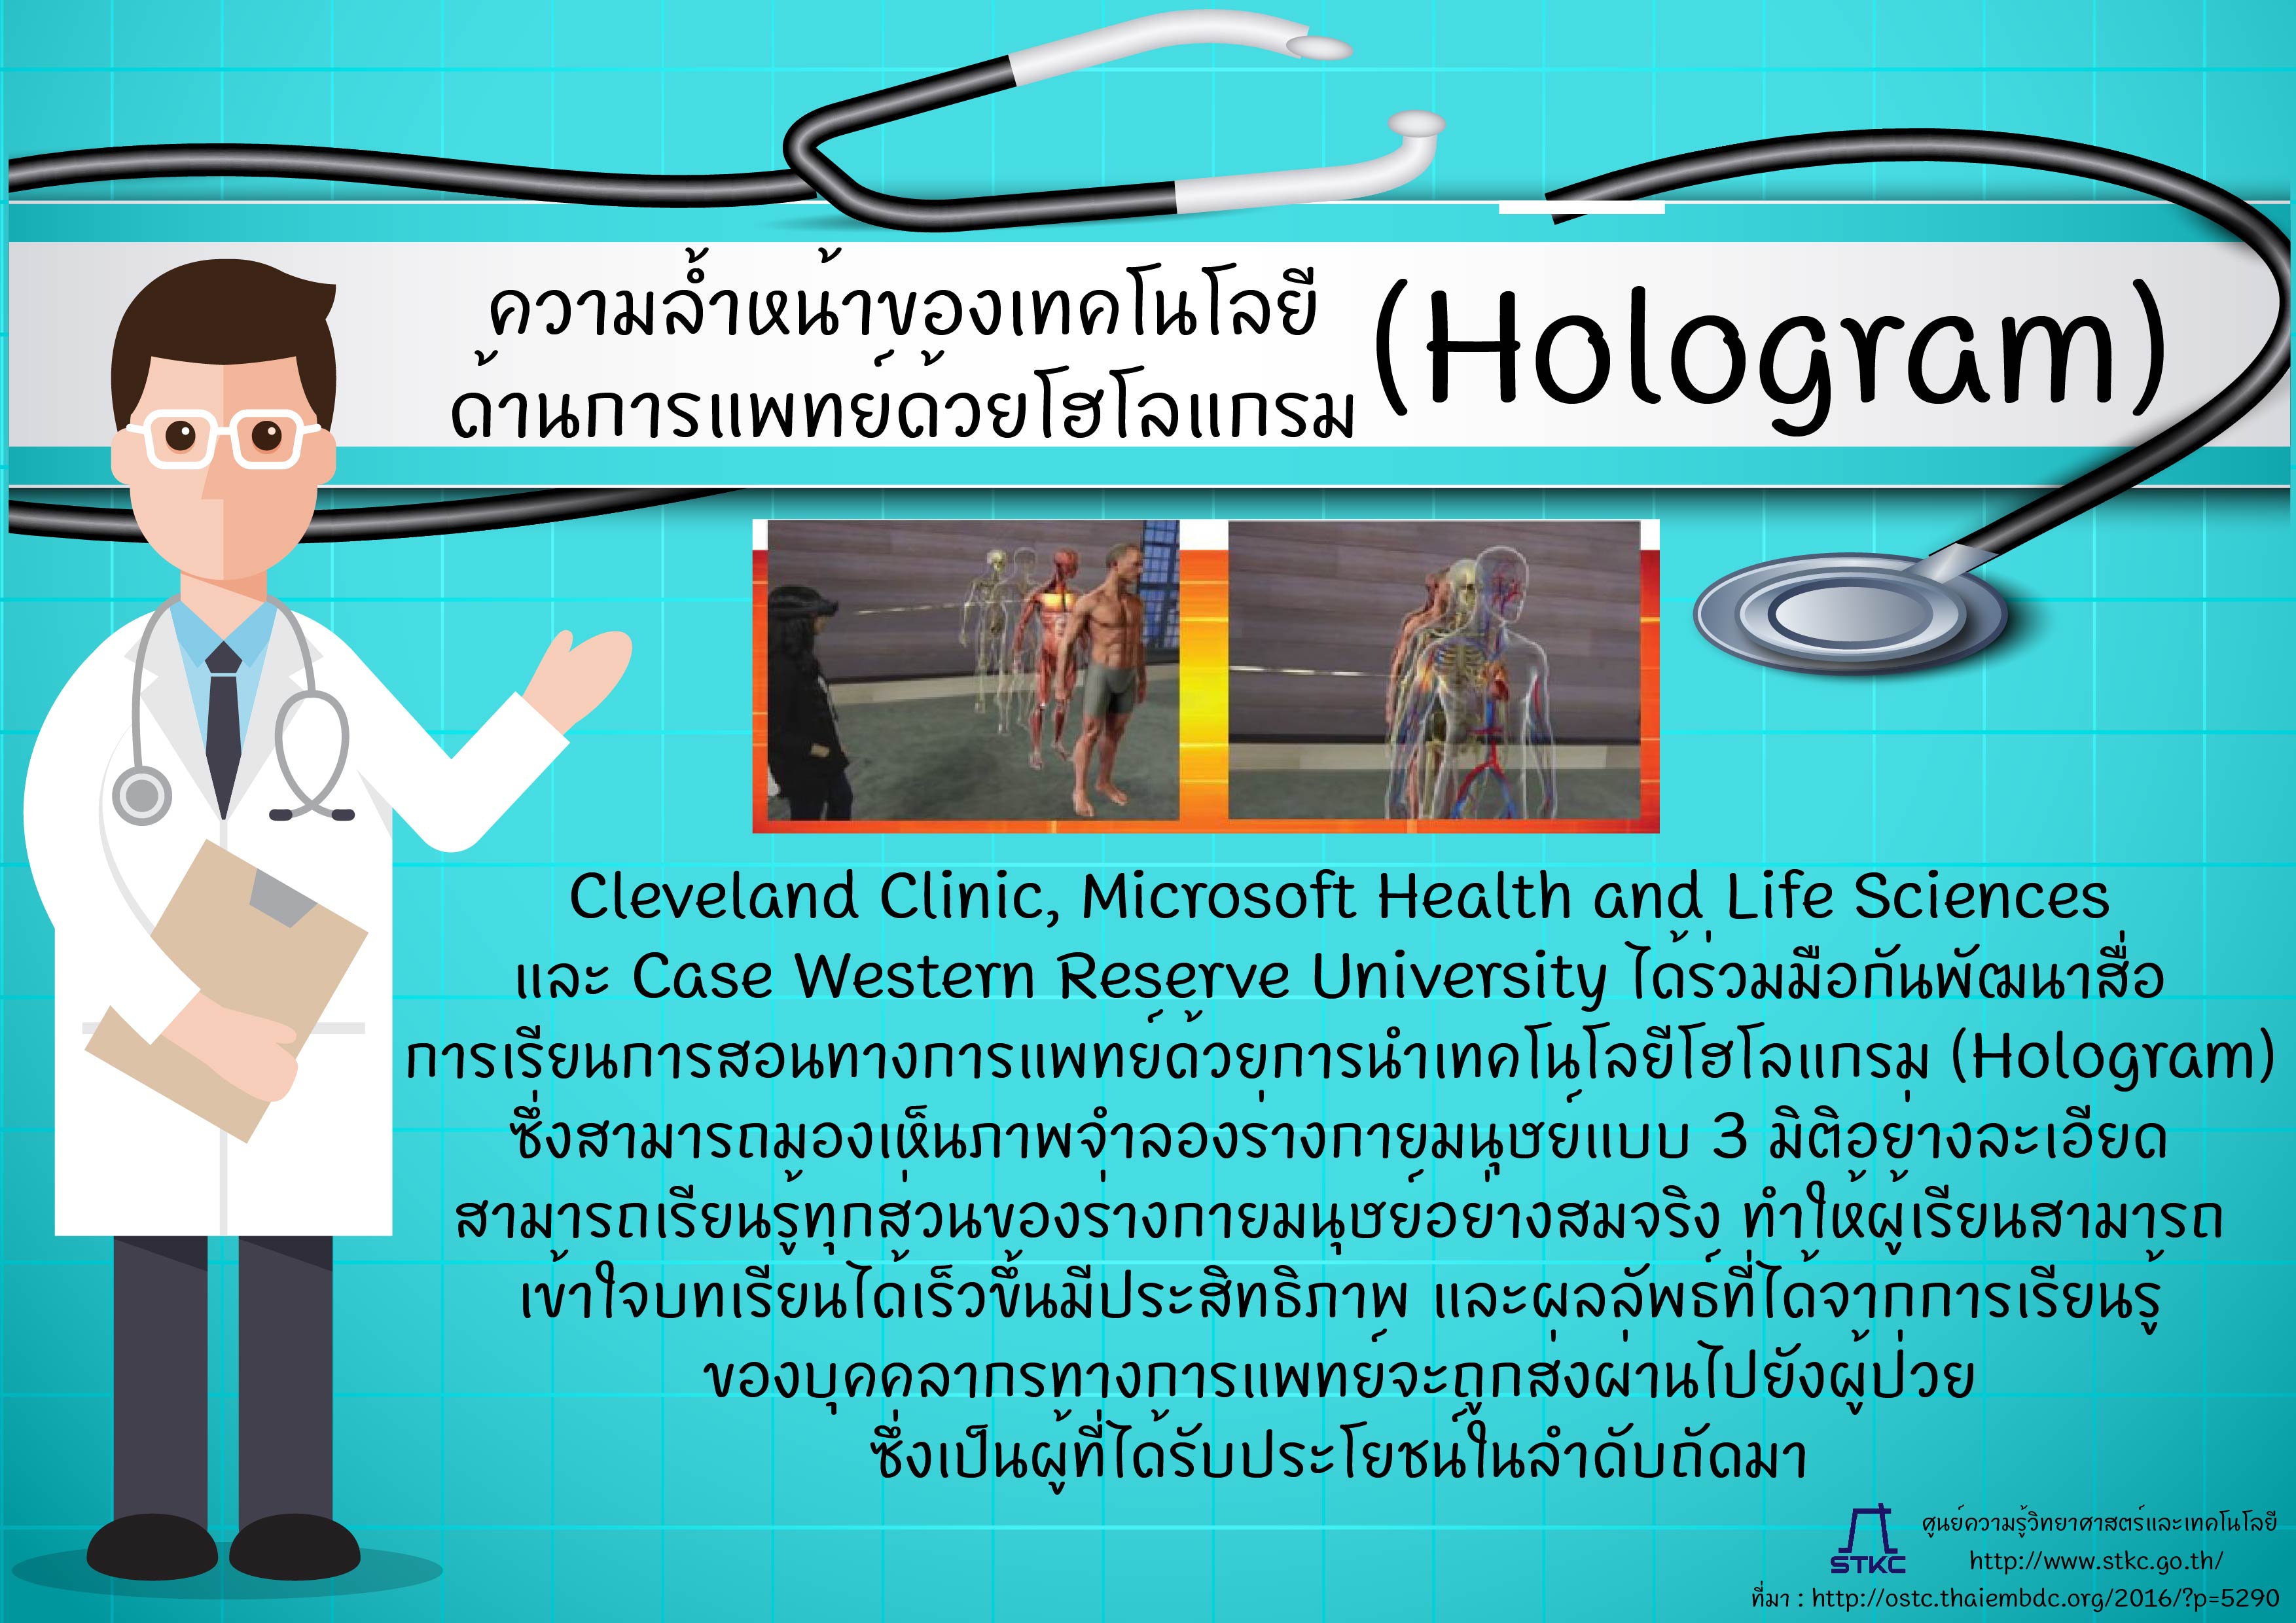 ความล้ำหน้าของเทคโนโลยีด้านการแพทย์ด้วยโฮโลแกรม (Hologram)